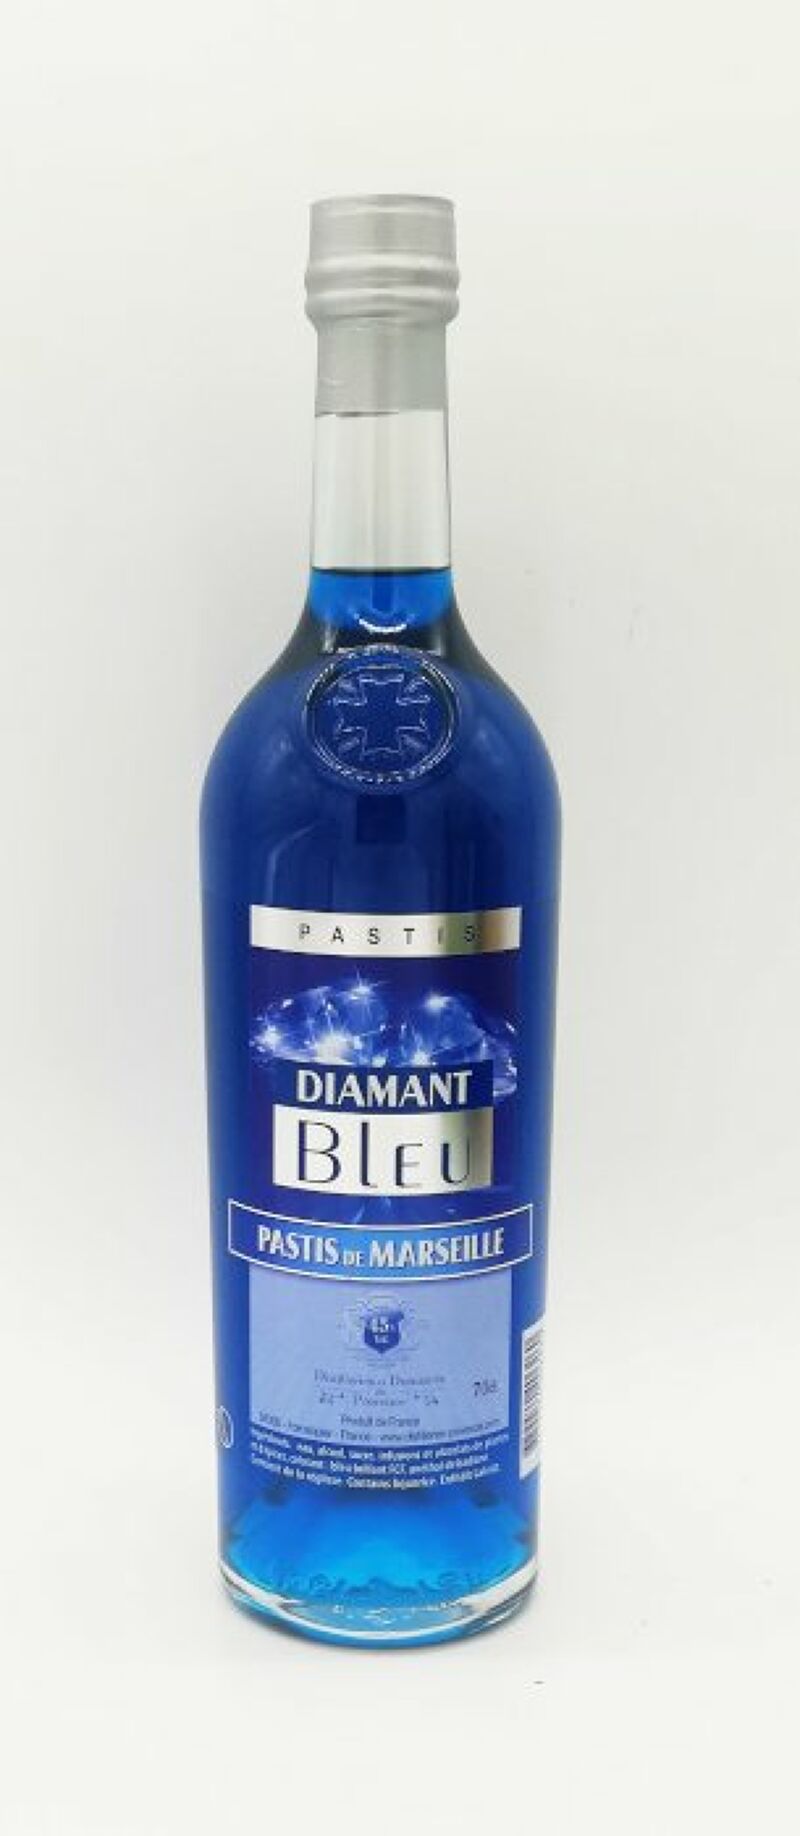 Vente en ligne - Diamant Bleu Pastis de Marseille 70cl